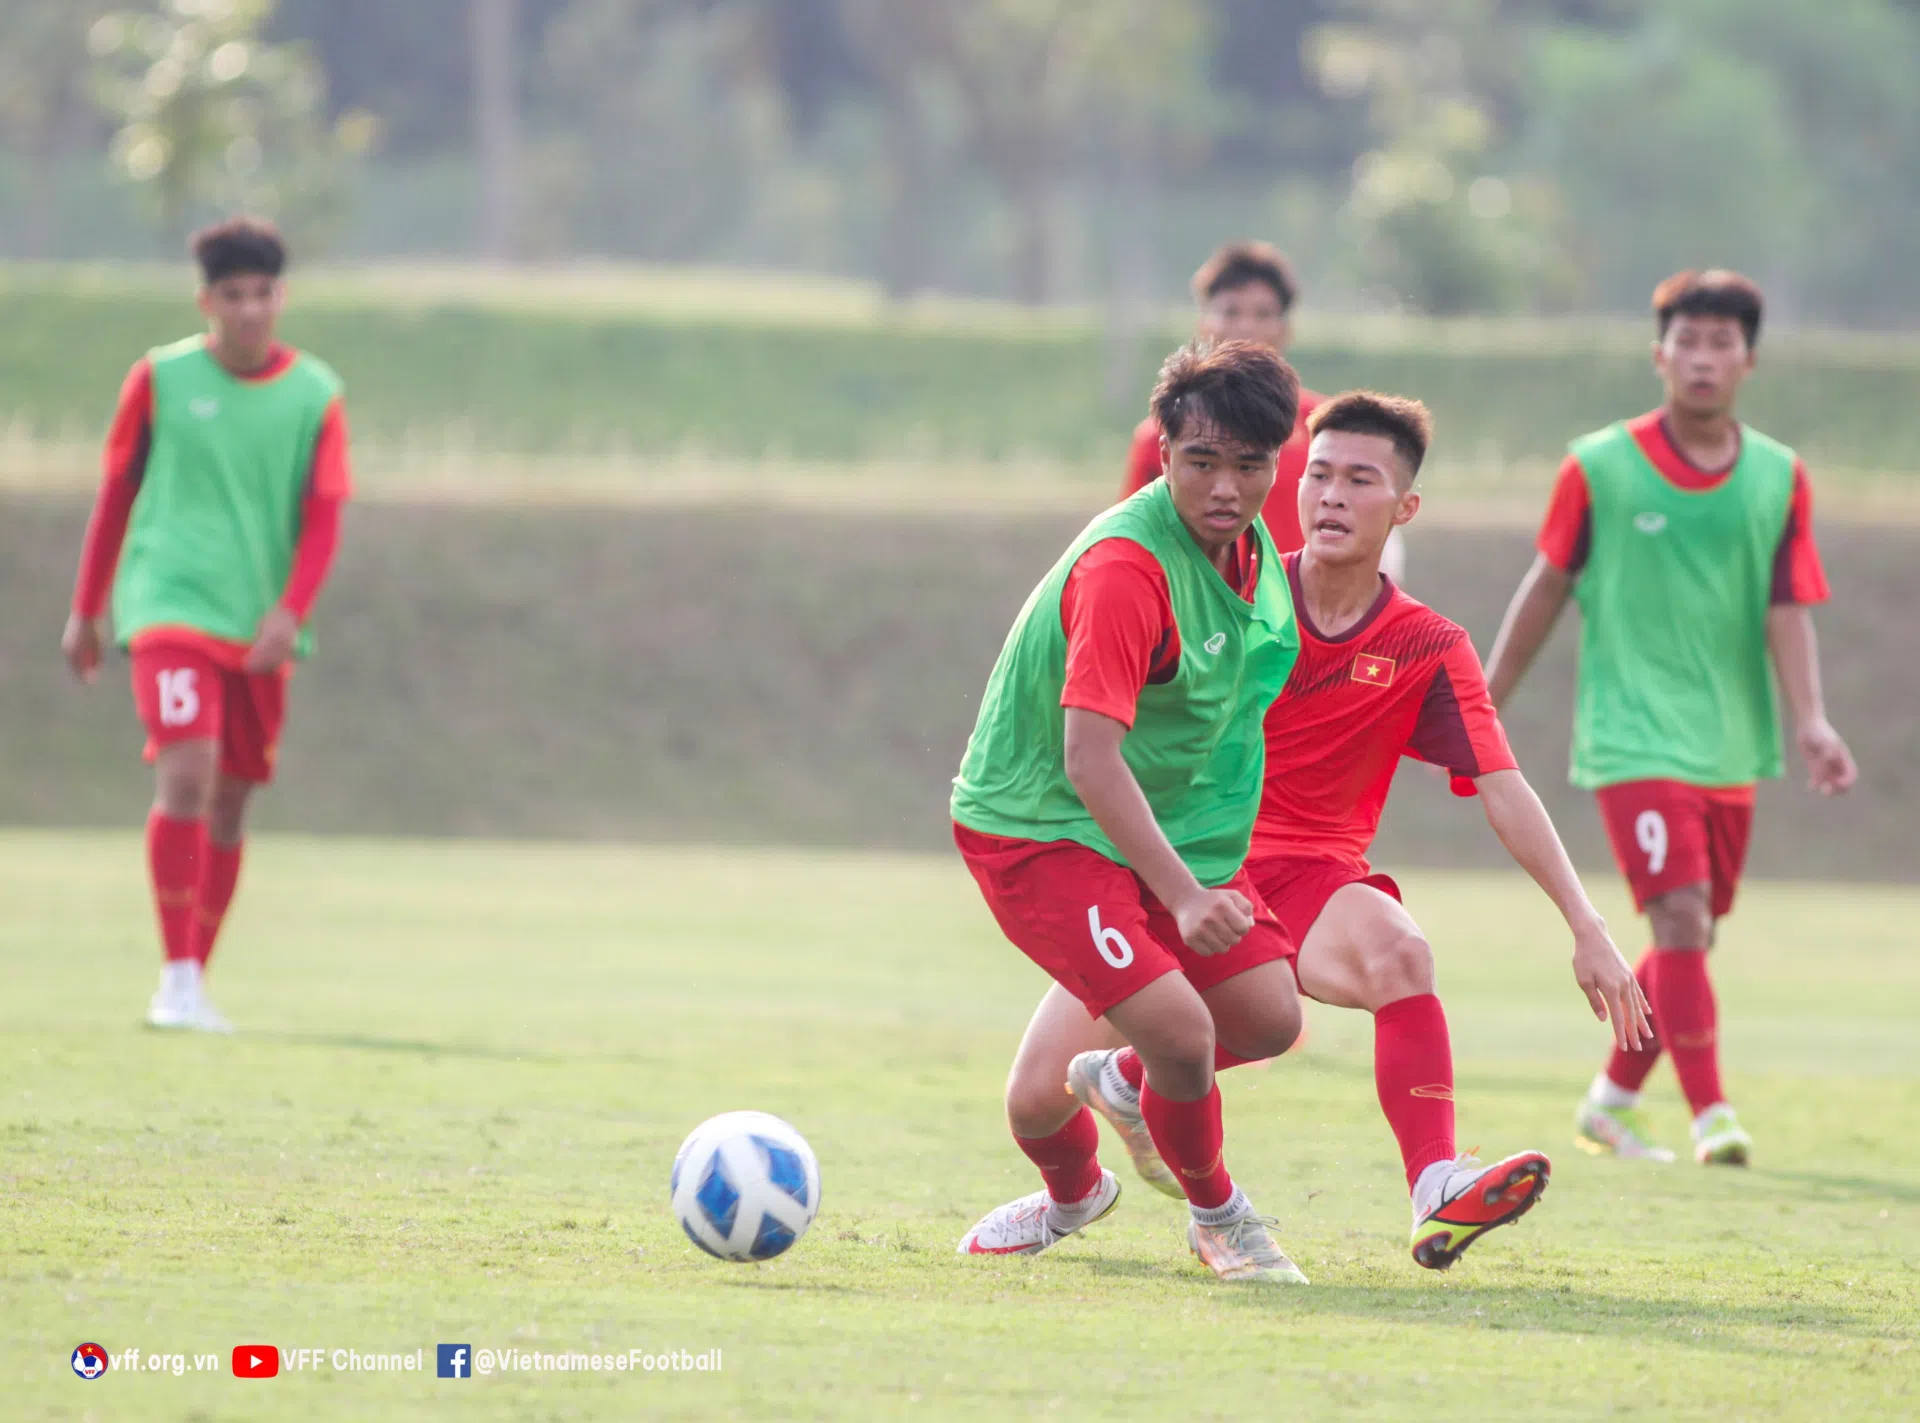 Sau lùm xùm giải AFF, Indonesia tiếp tục chơi đẹp với Việt Nam 164193